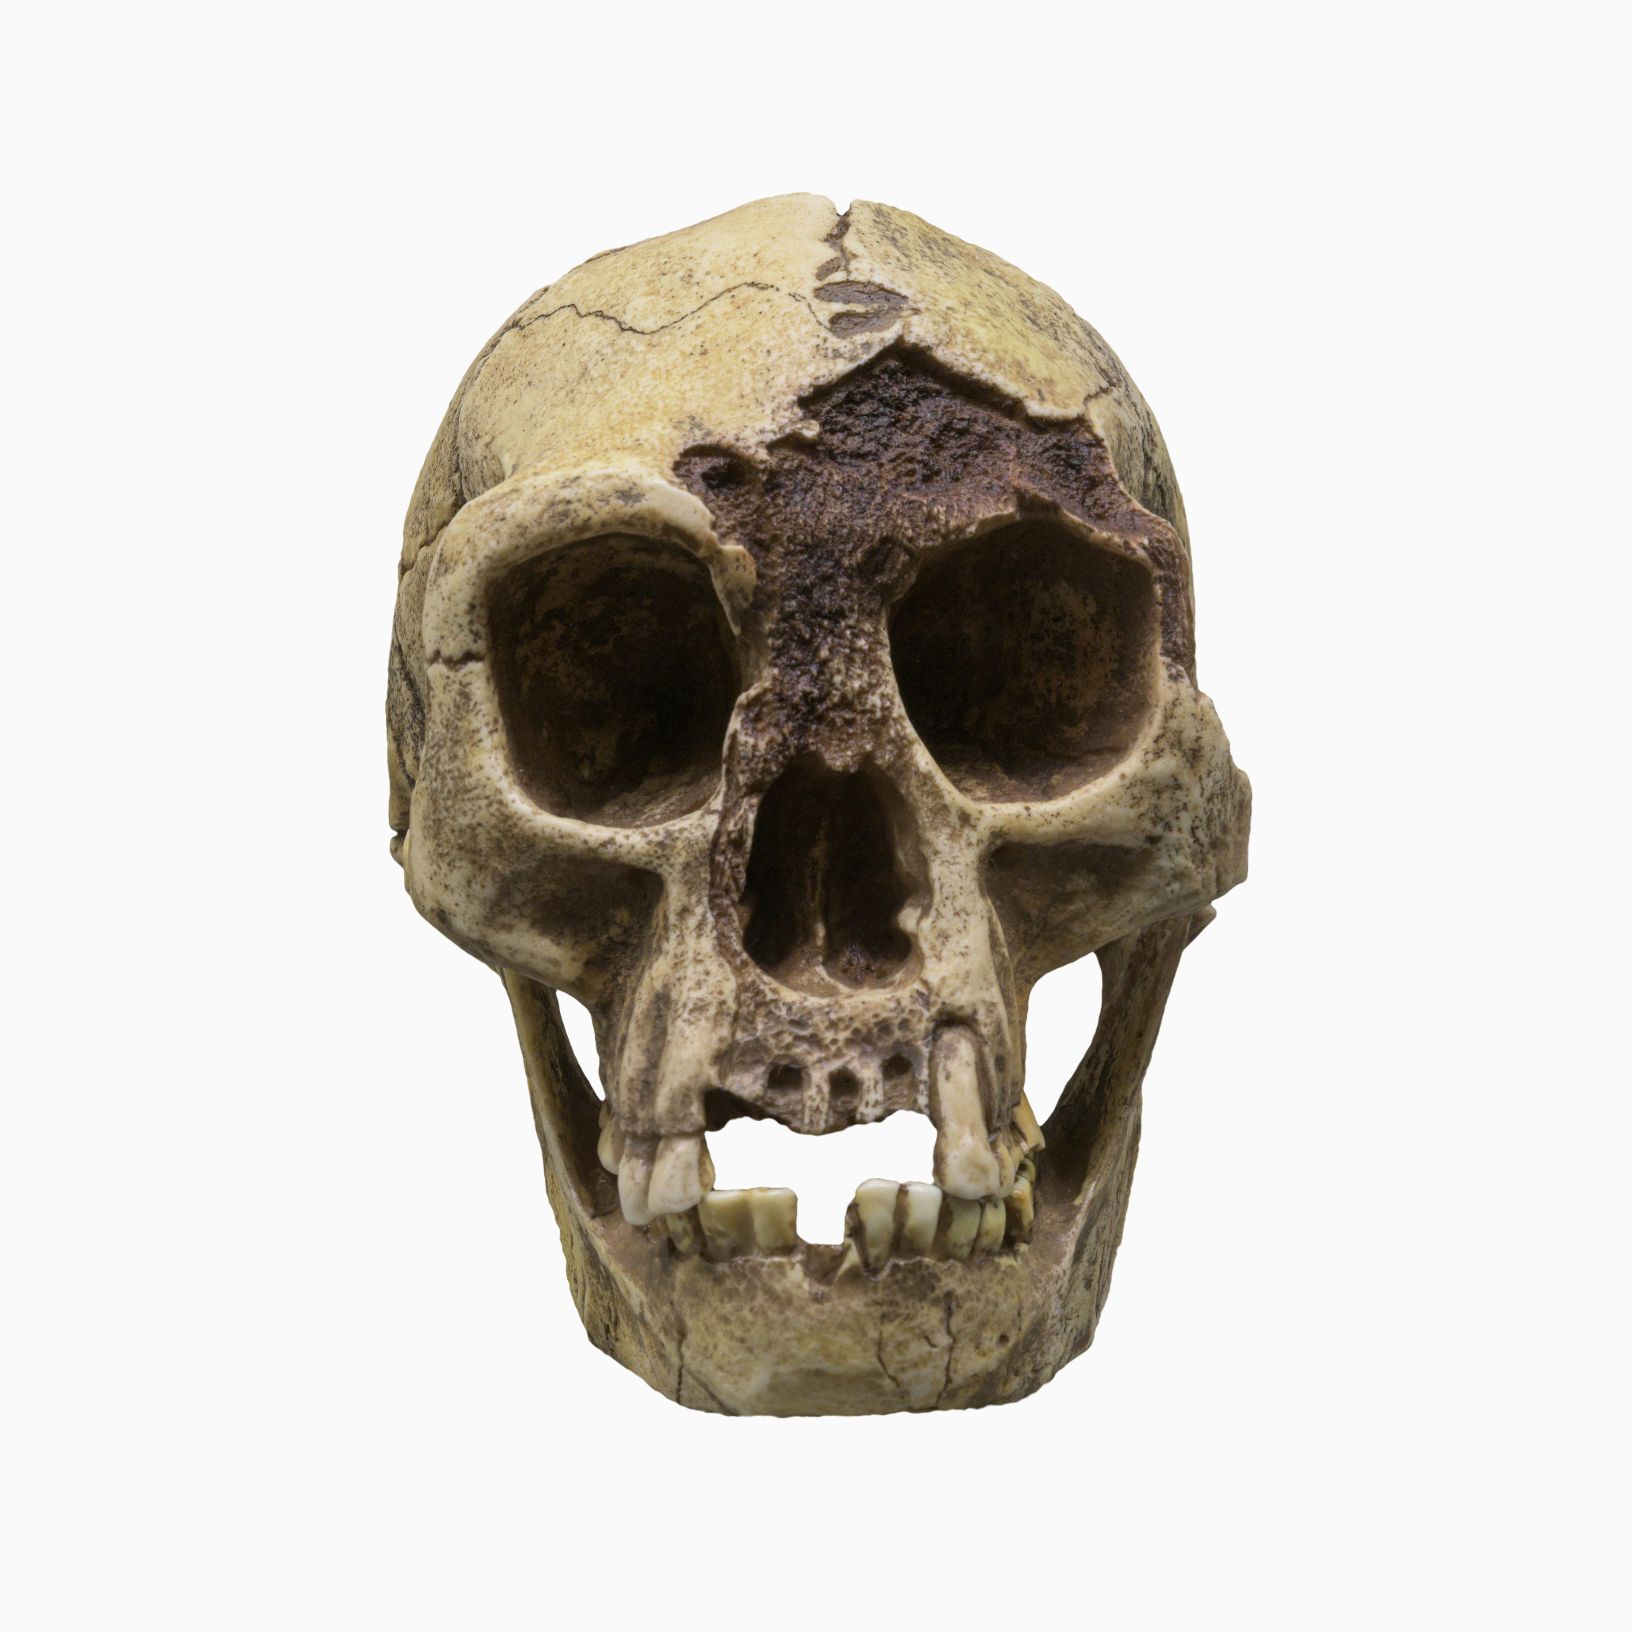 'Hobbit' lakaplı H. floresiensis (Flores Adamı) Kafatası, Endonezya'nın Flores adasında yaşayan küçük bir arkaik insan türüdür. © Resim Kredisi: Dmitriy Moroz | DreamsTime.com'dan lisanslıdır (Editoryal/Ticari Kullanım Stok Fotoğrafı, ID: 227004112)